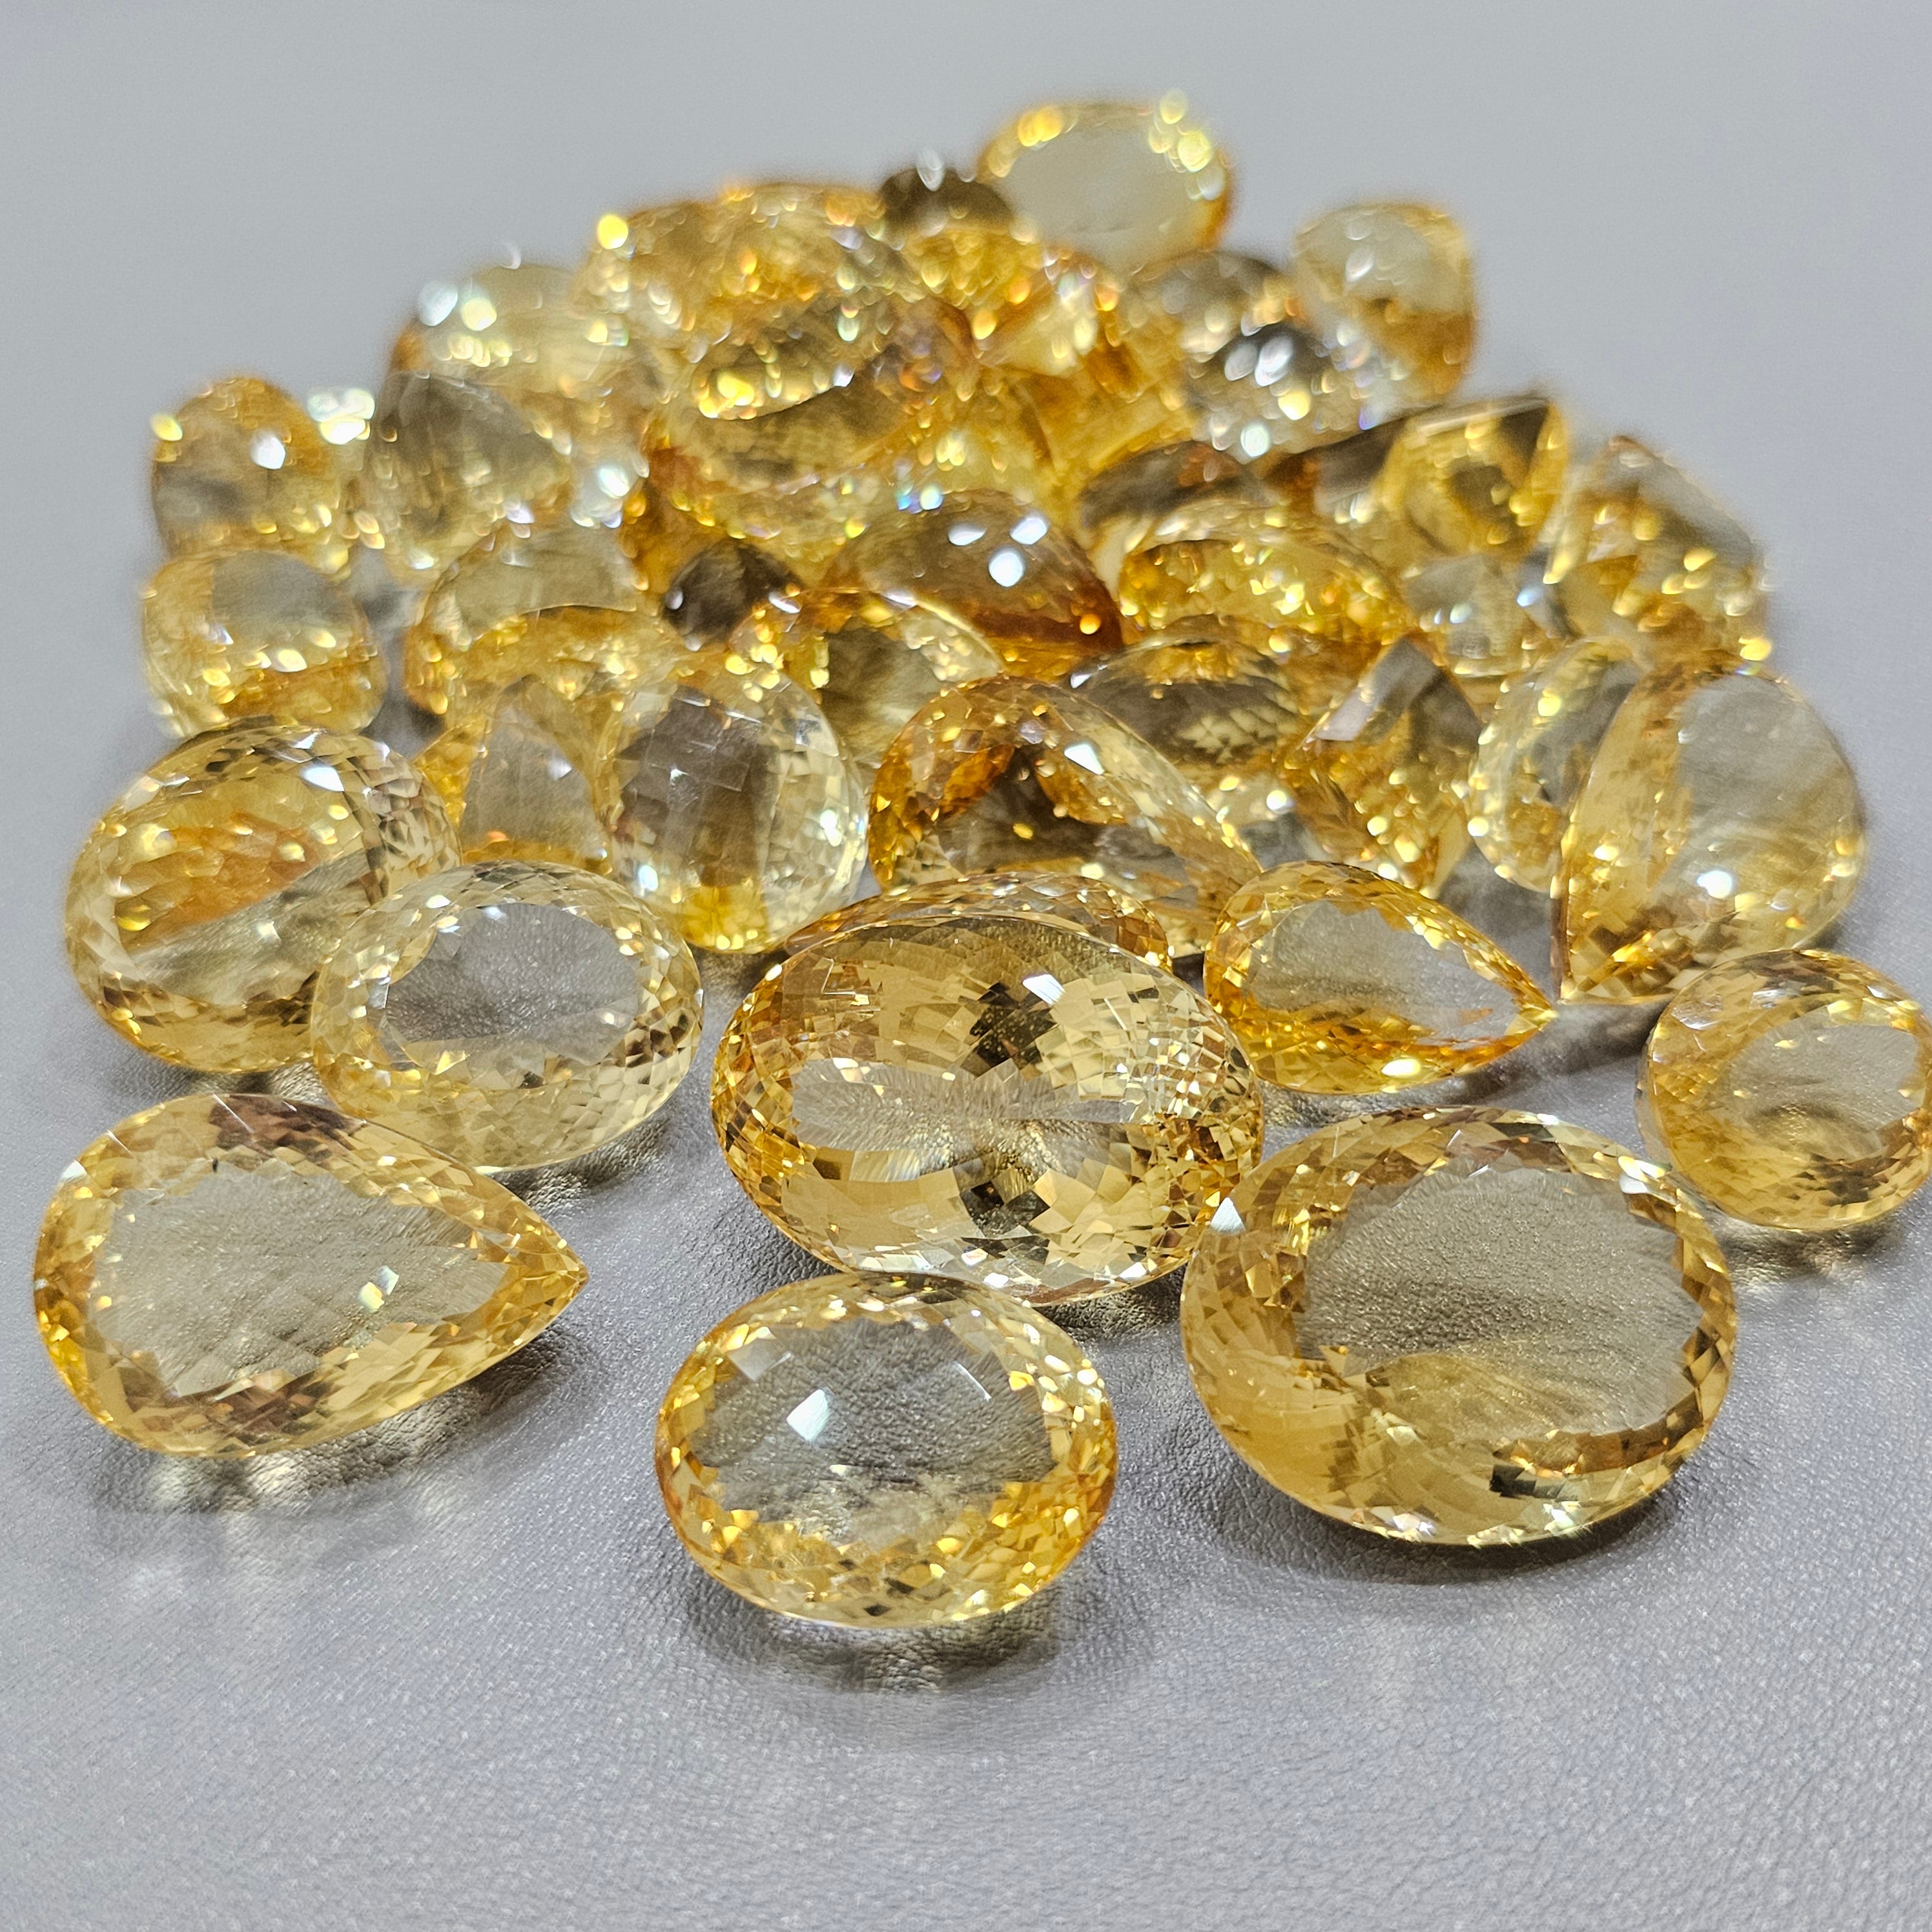 2 Pcs of Large Natural Citrine Gemstones |  Flawless - The LabradoriteKing